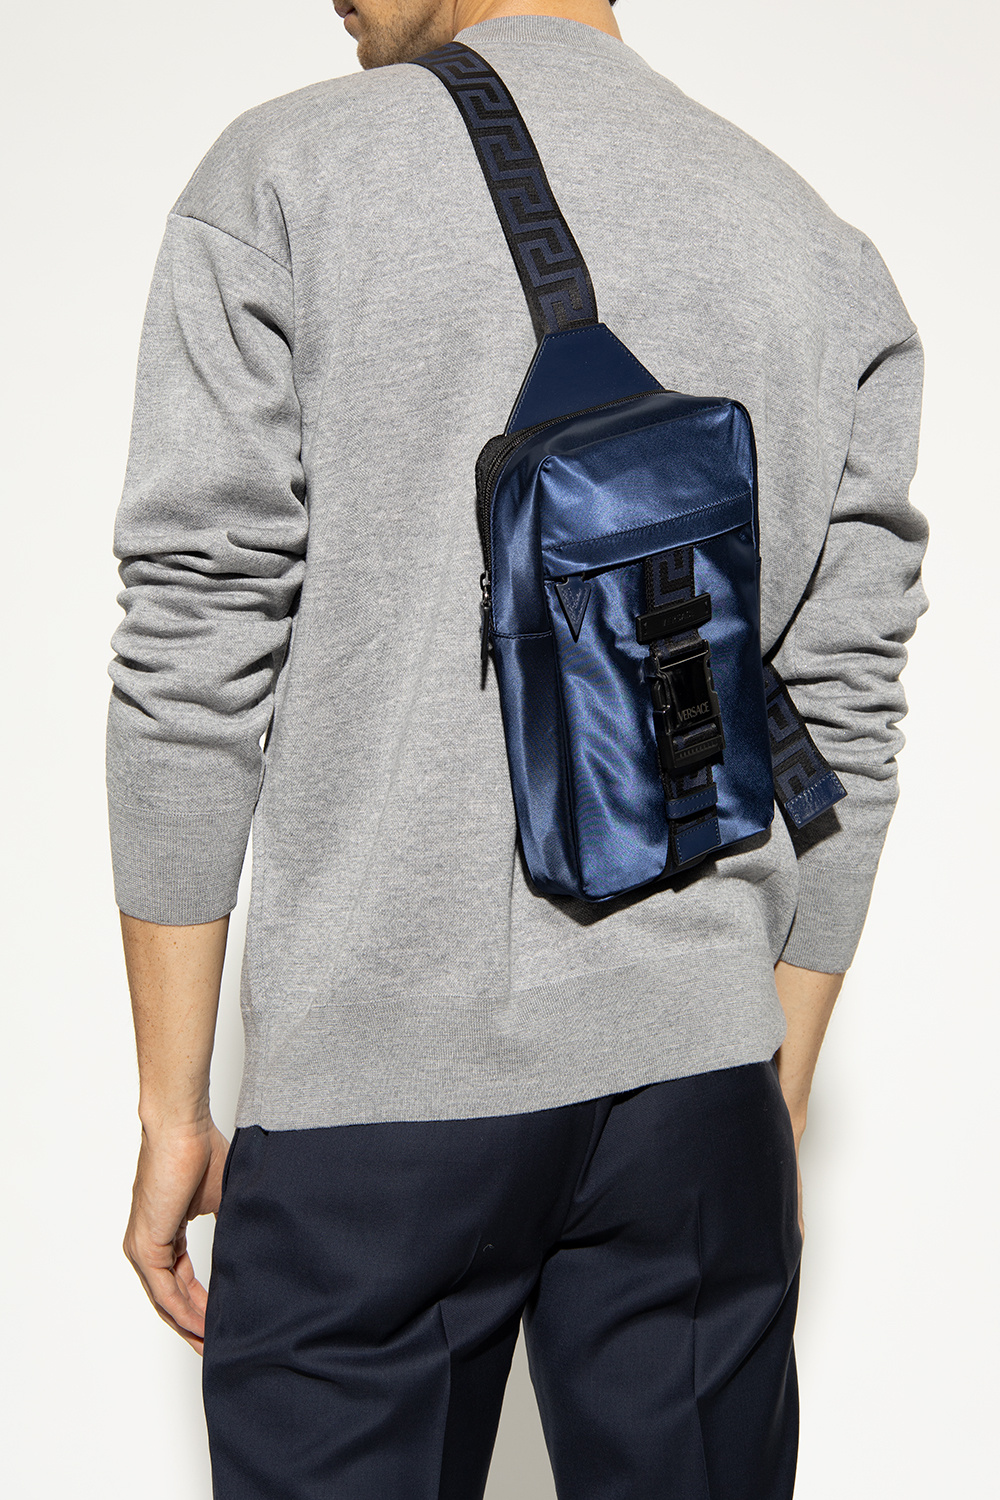 Versace One-shoulder PUMA backpack